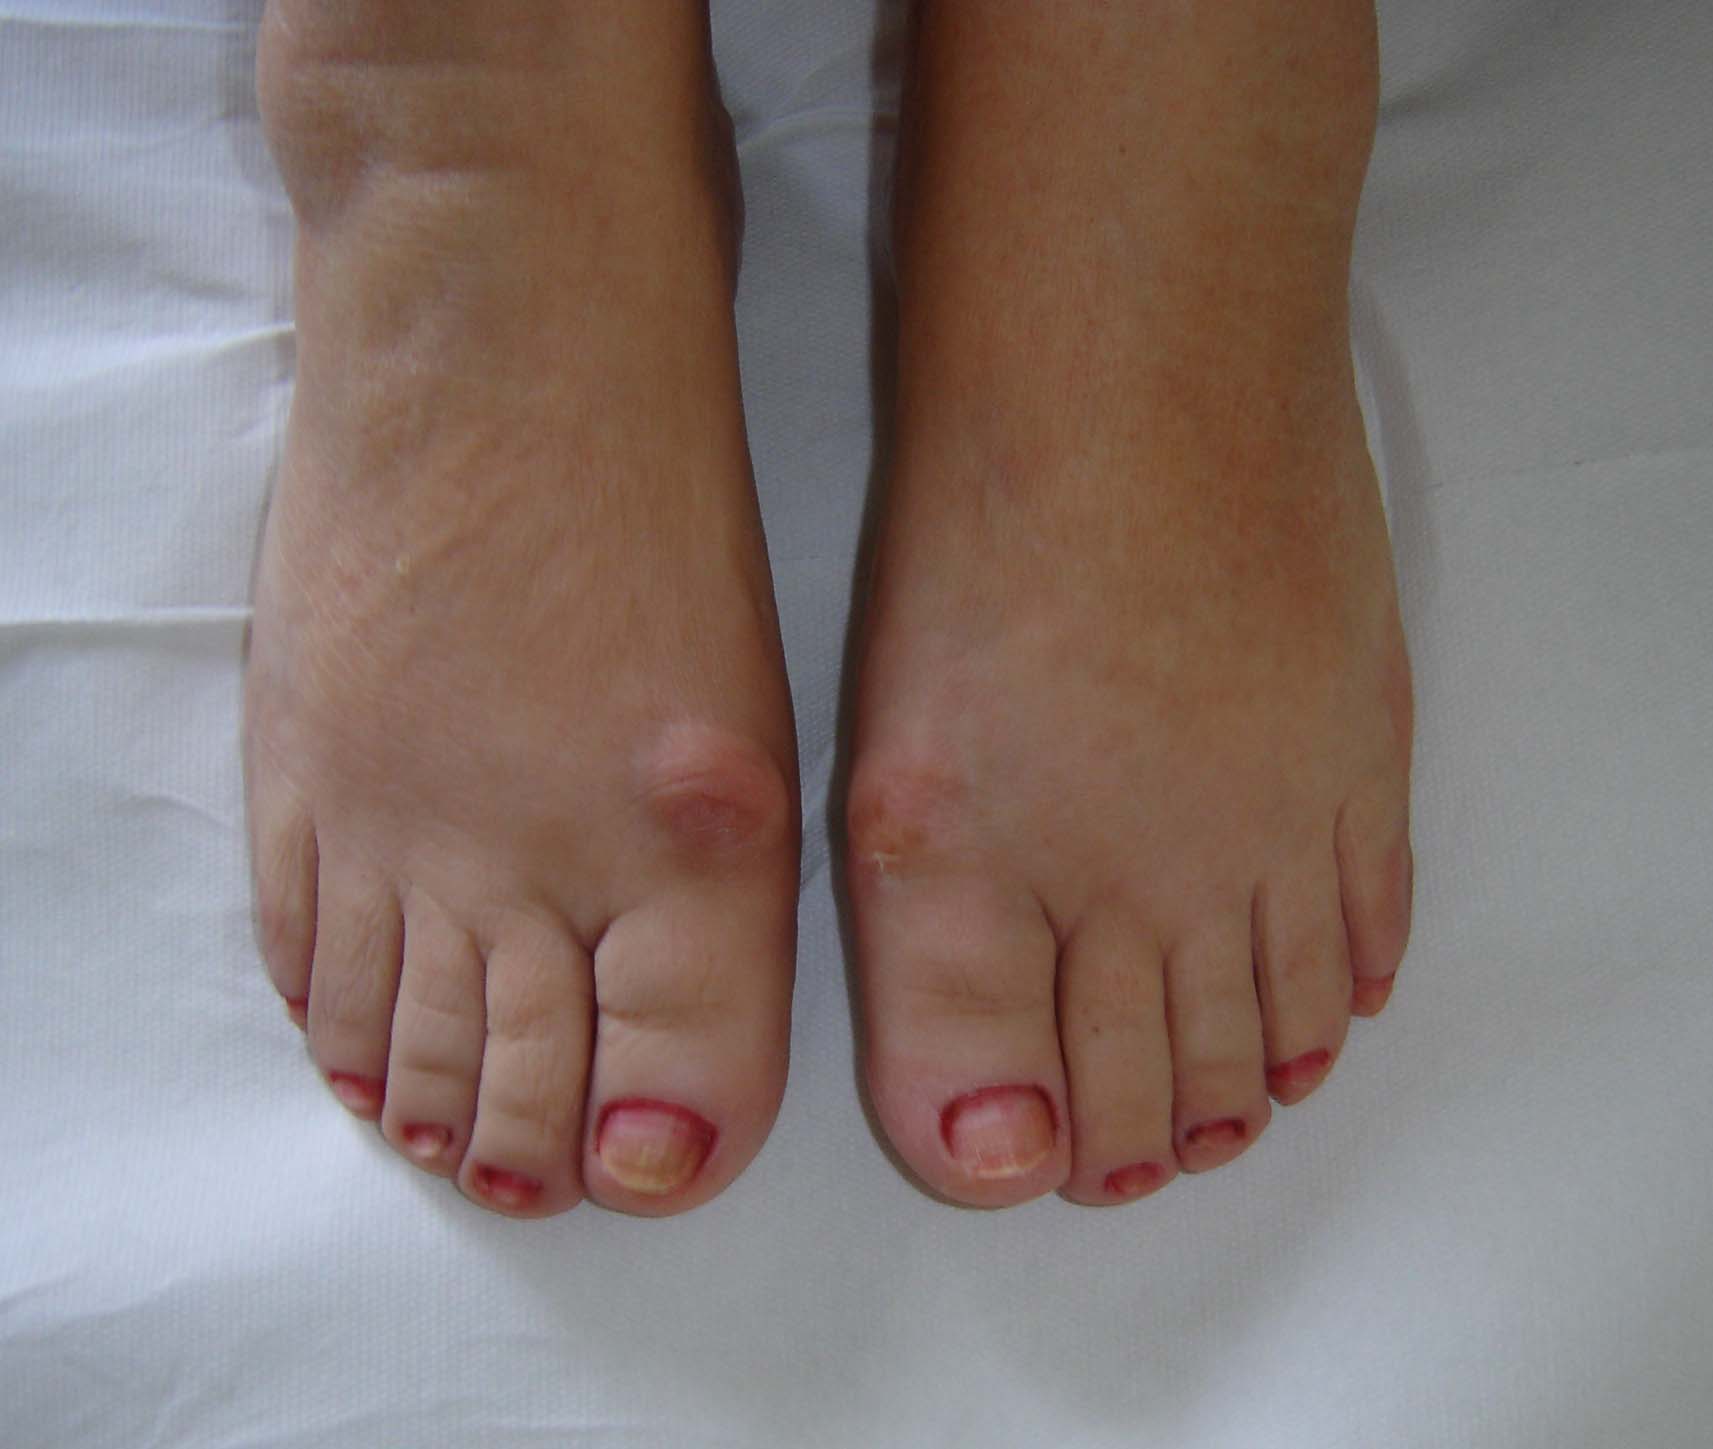 artroza pe tratamentul piciorului